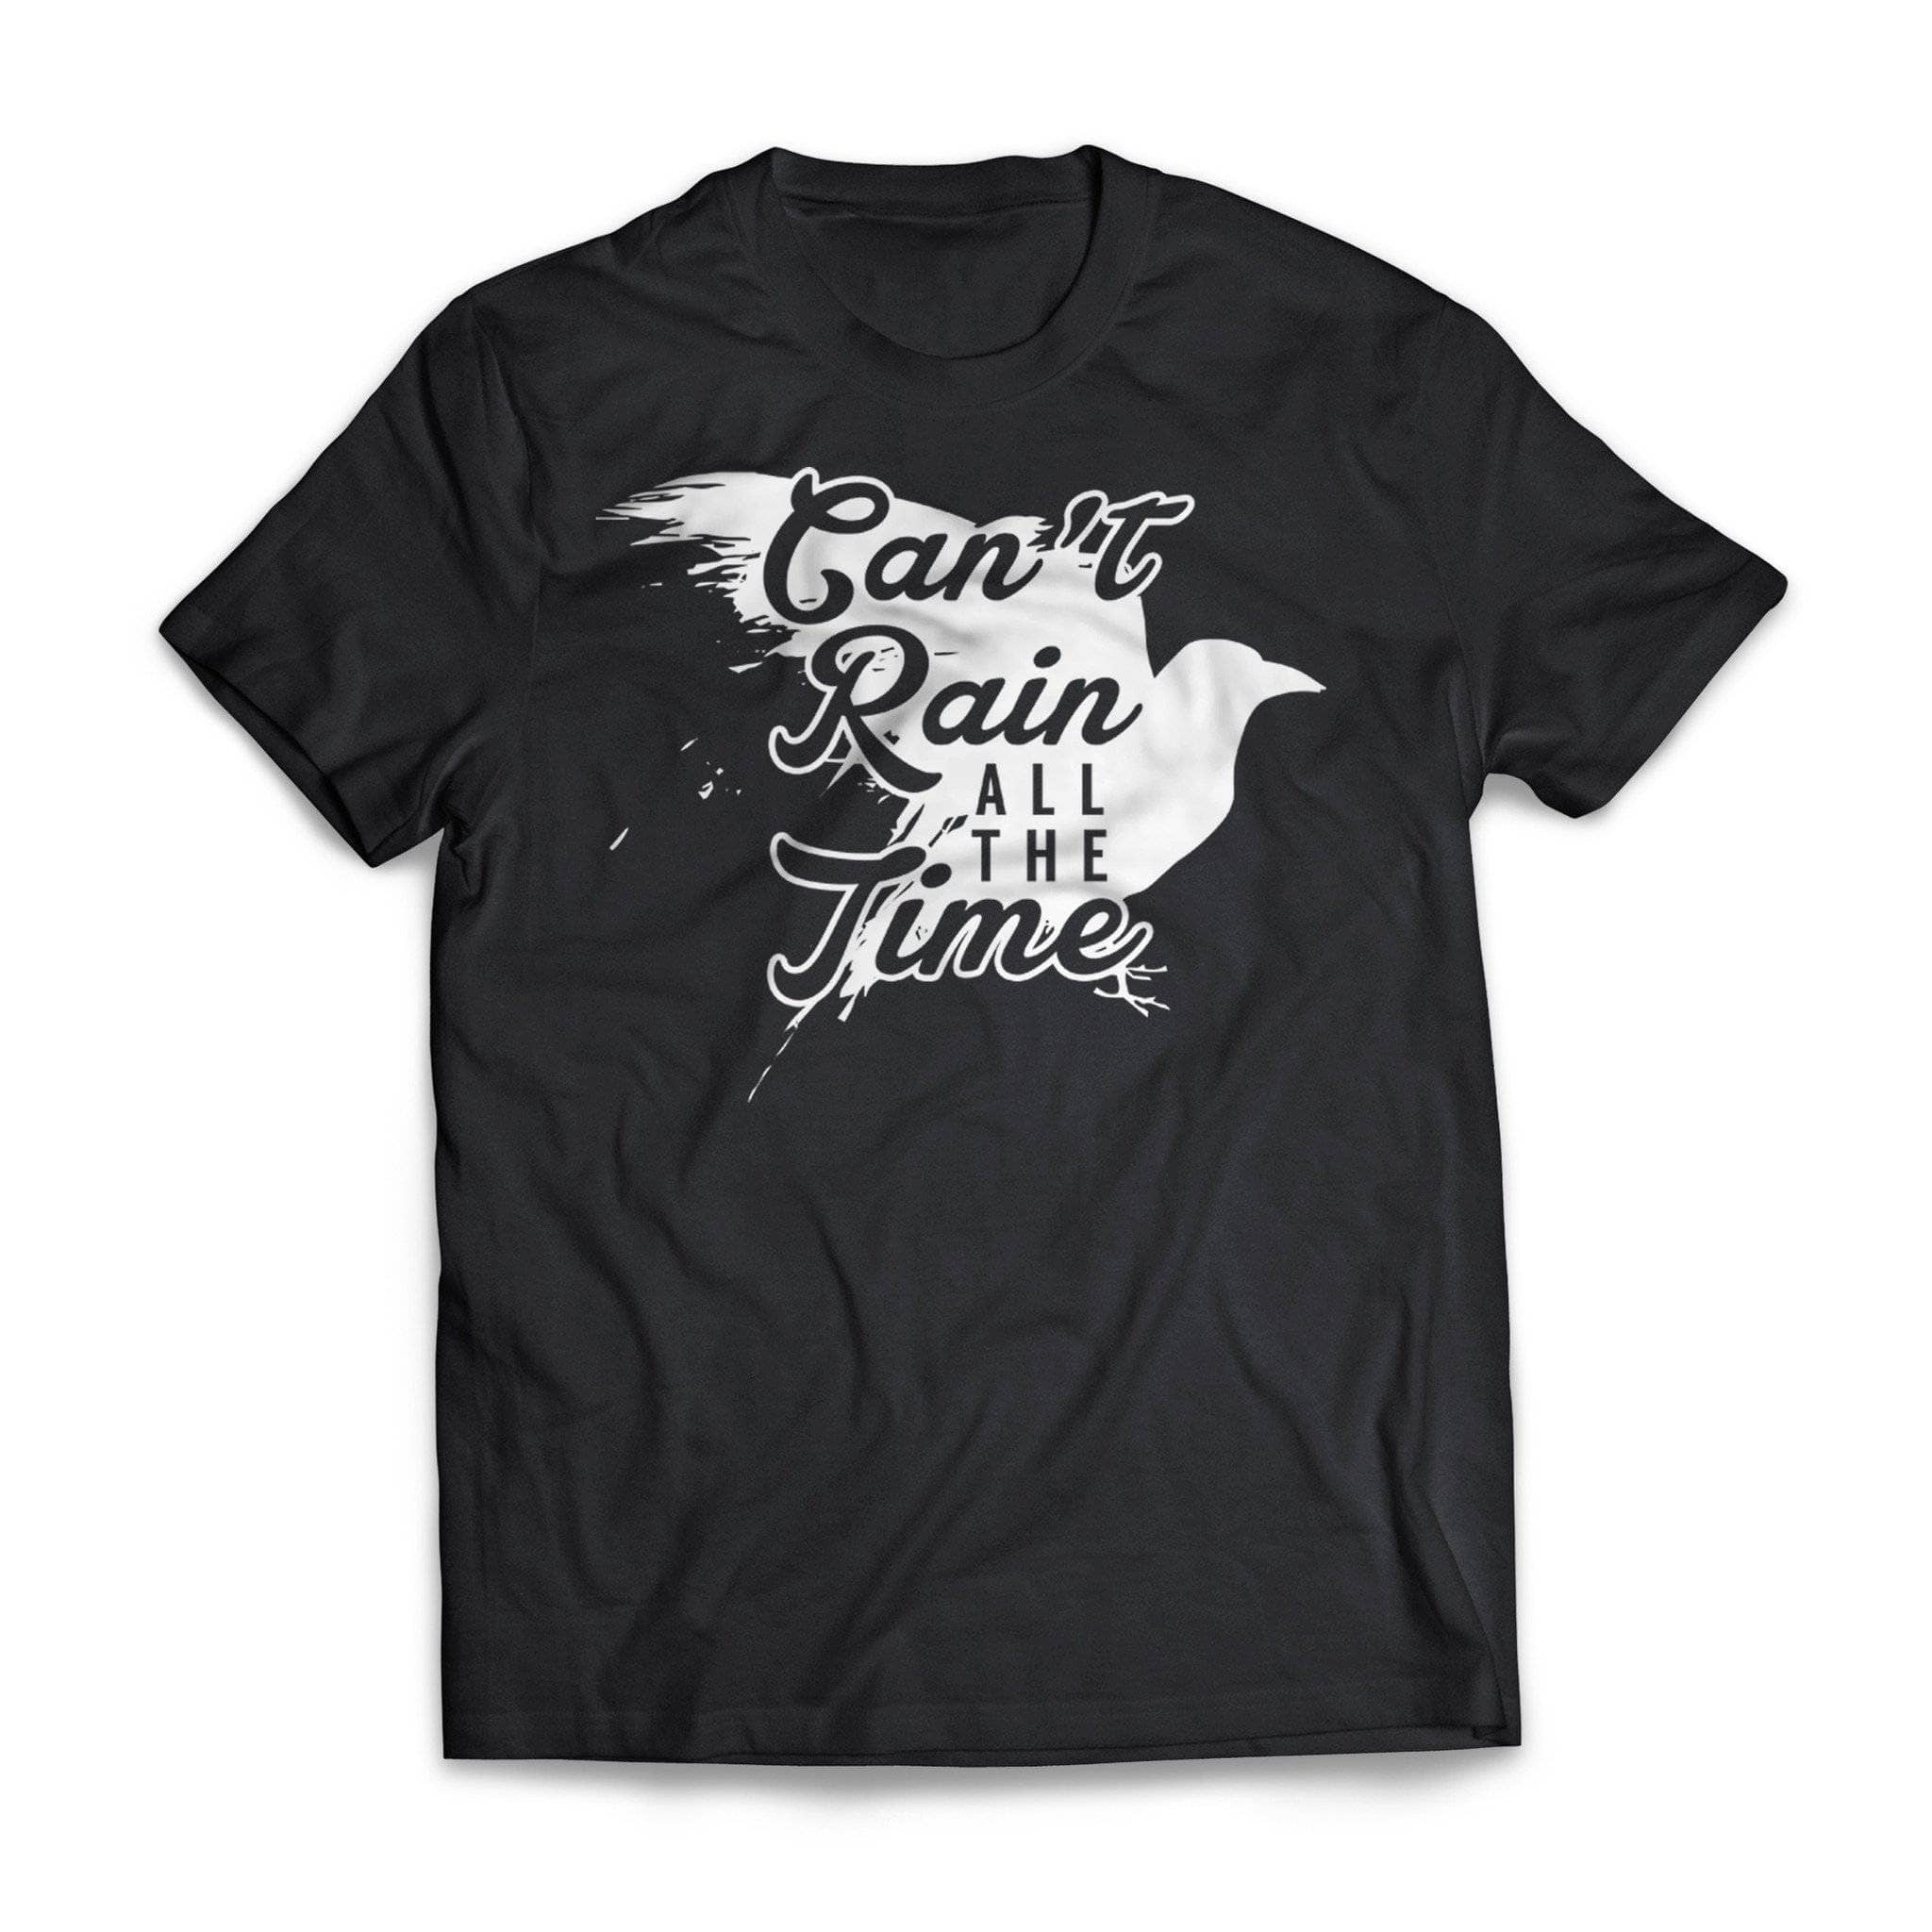 Can't Rain Crow Image